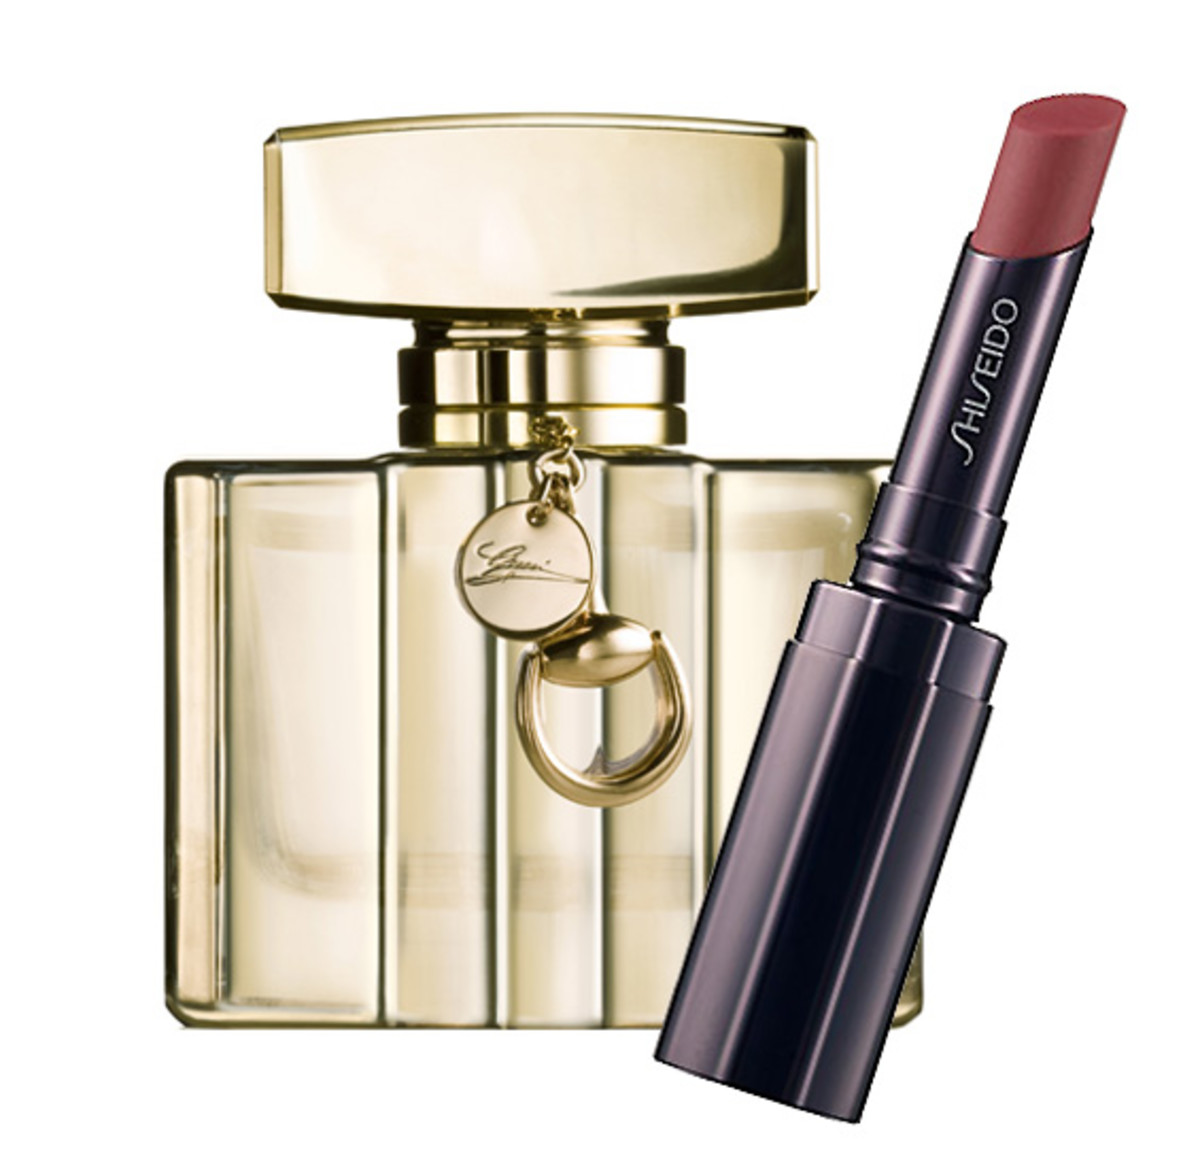 Gucci Premiere de Gucci + Shiseido Shimmering Rouge Lipstick in RD718 Sugar Plum